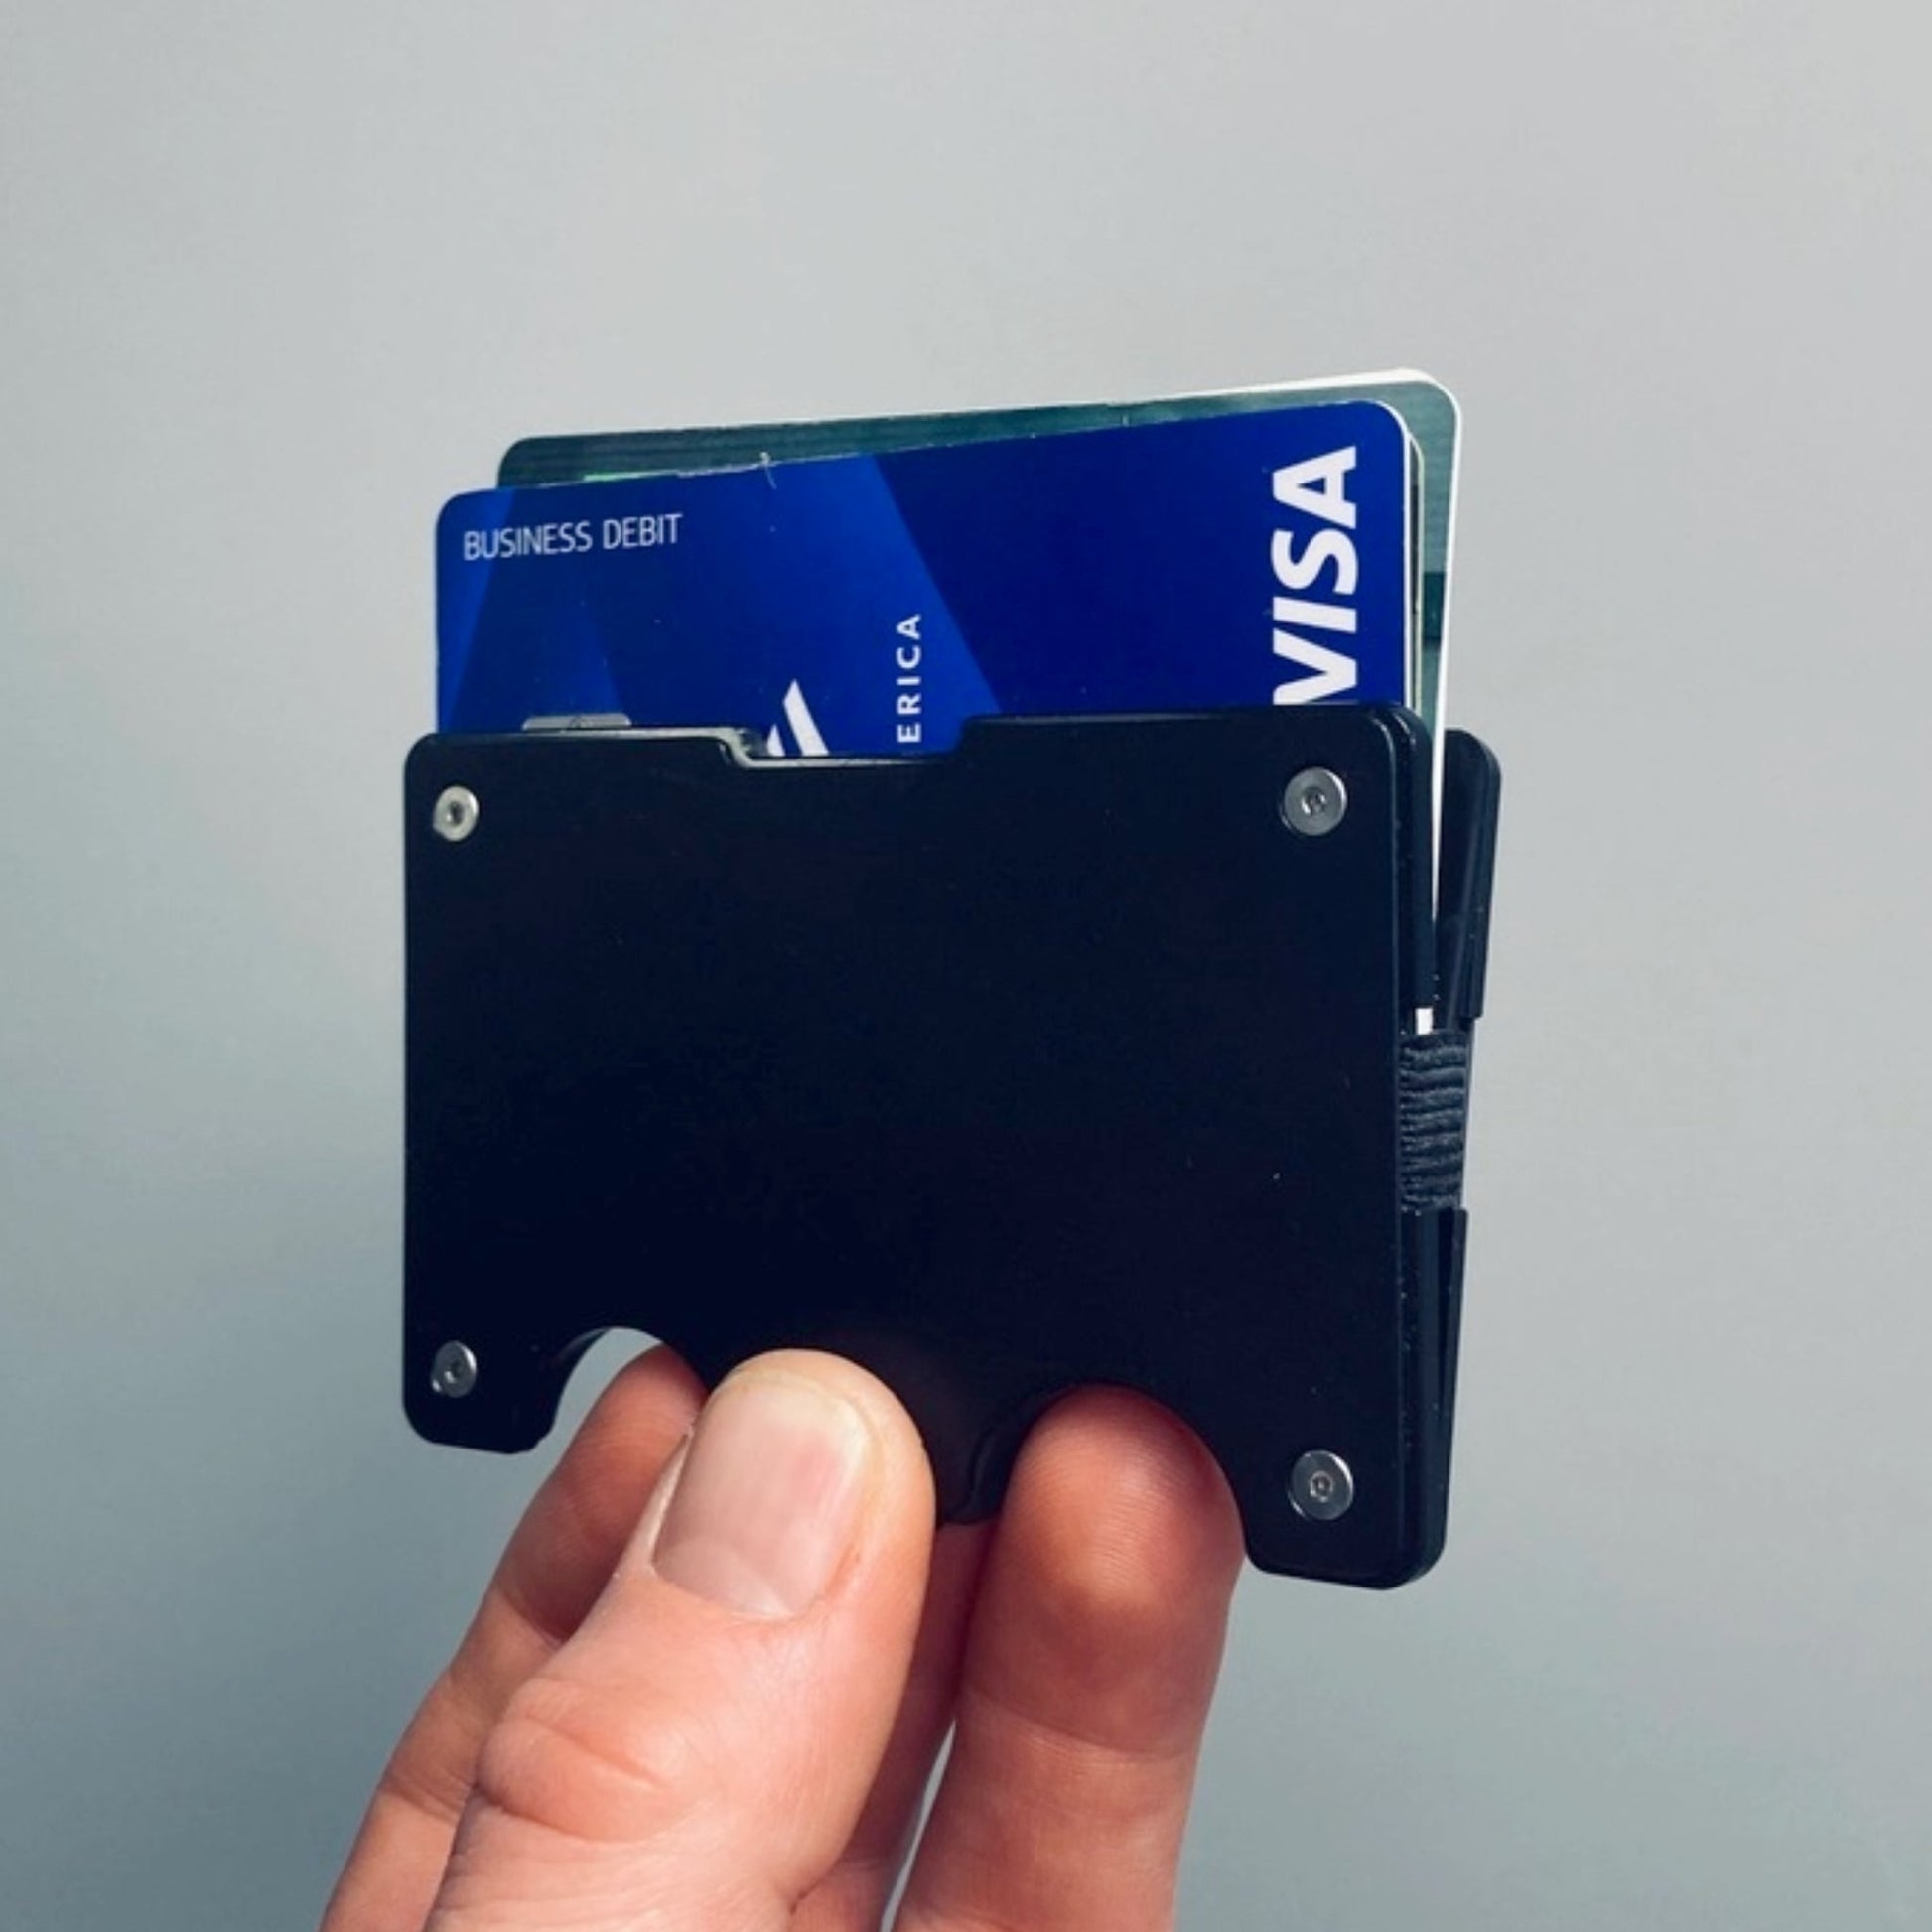 Rift Wallet - Slim Metal RFID Blocking - Made in the USA